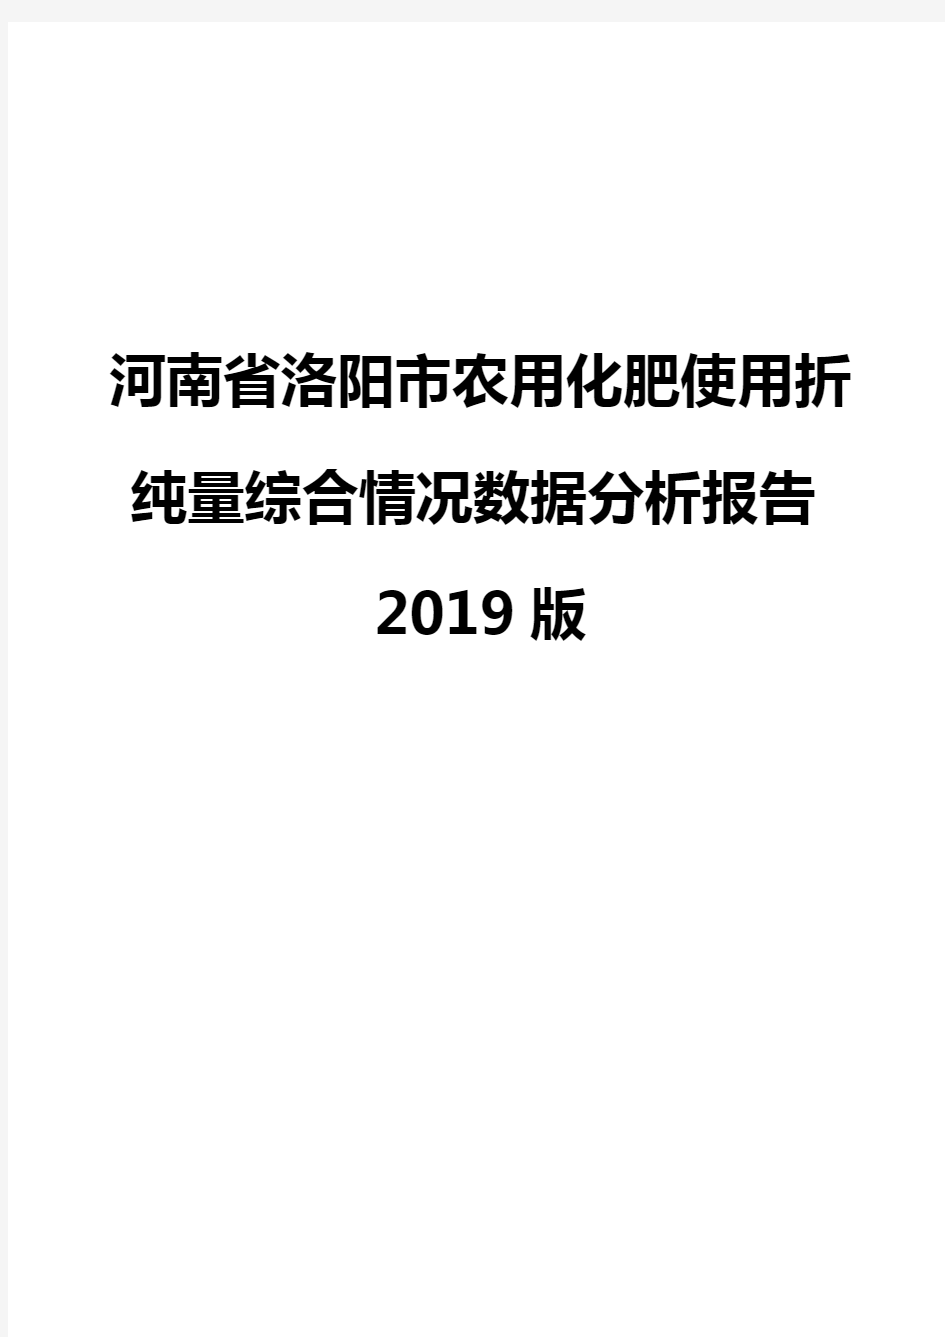 河南省洛阳市农用化肥使用折纯量综合情况数据分析报告2019版